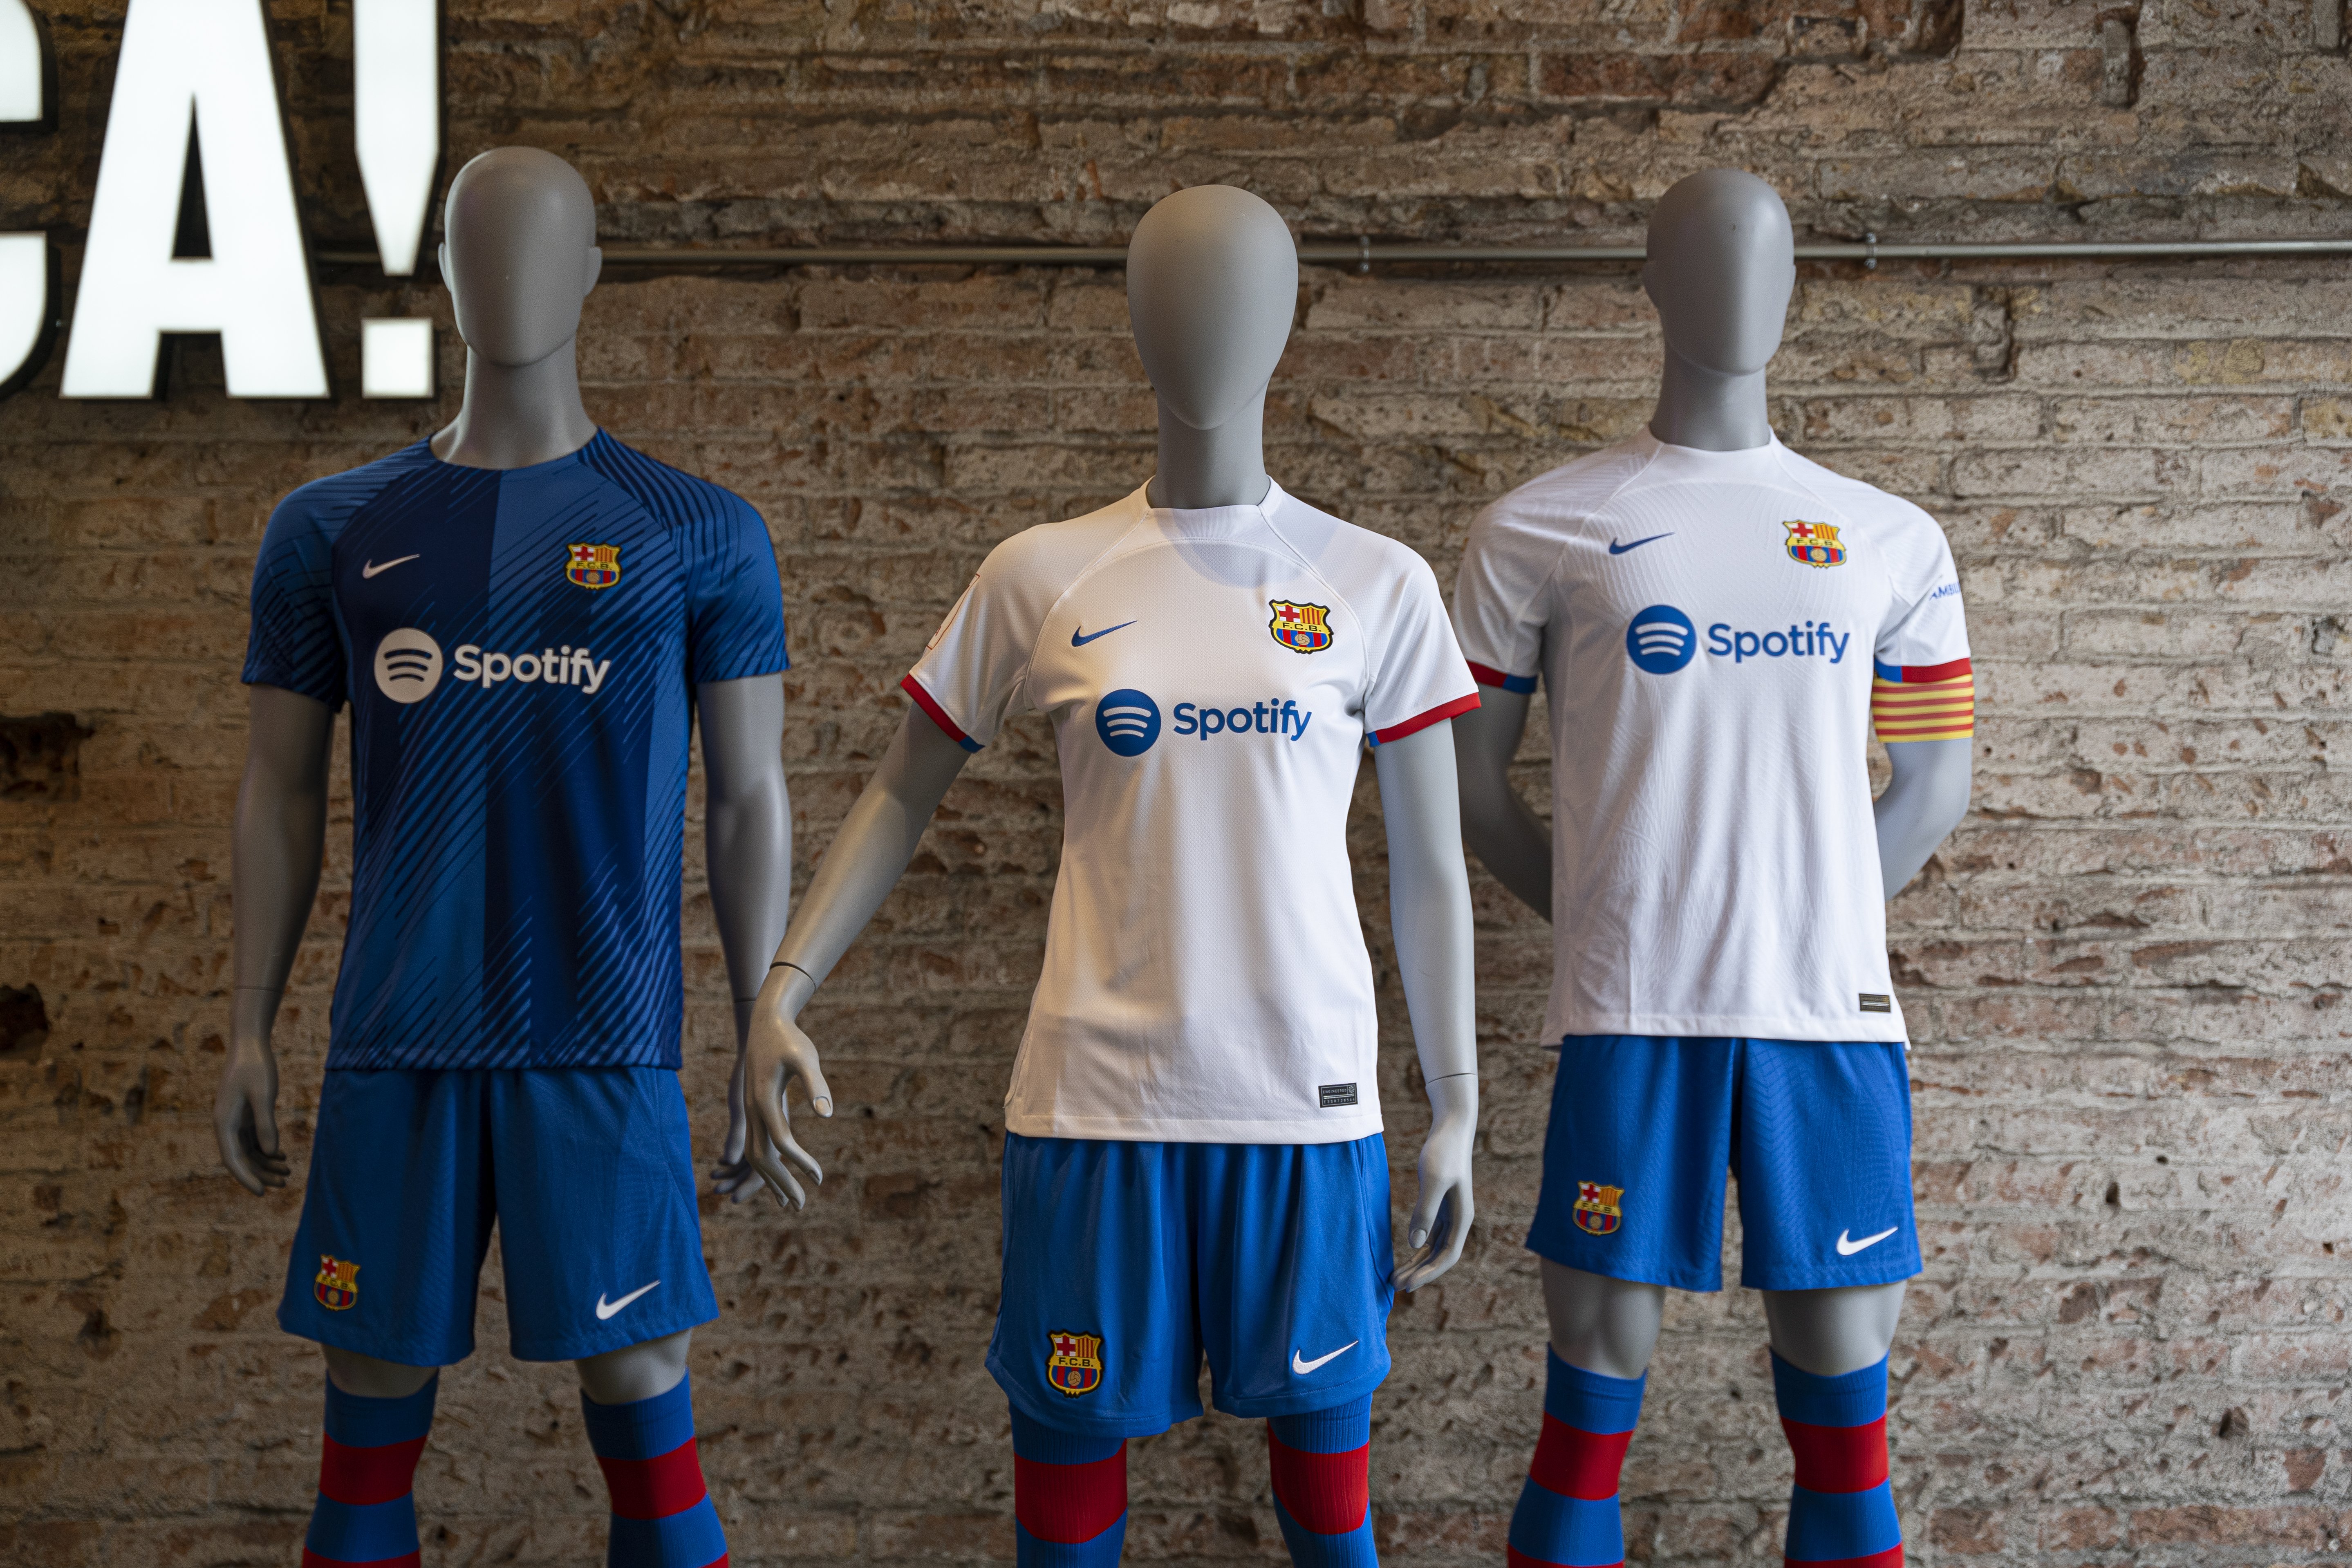 El Barça presenta su nueva y rompedora camiseta: blanca y recordando a Johan Cruyff